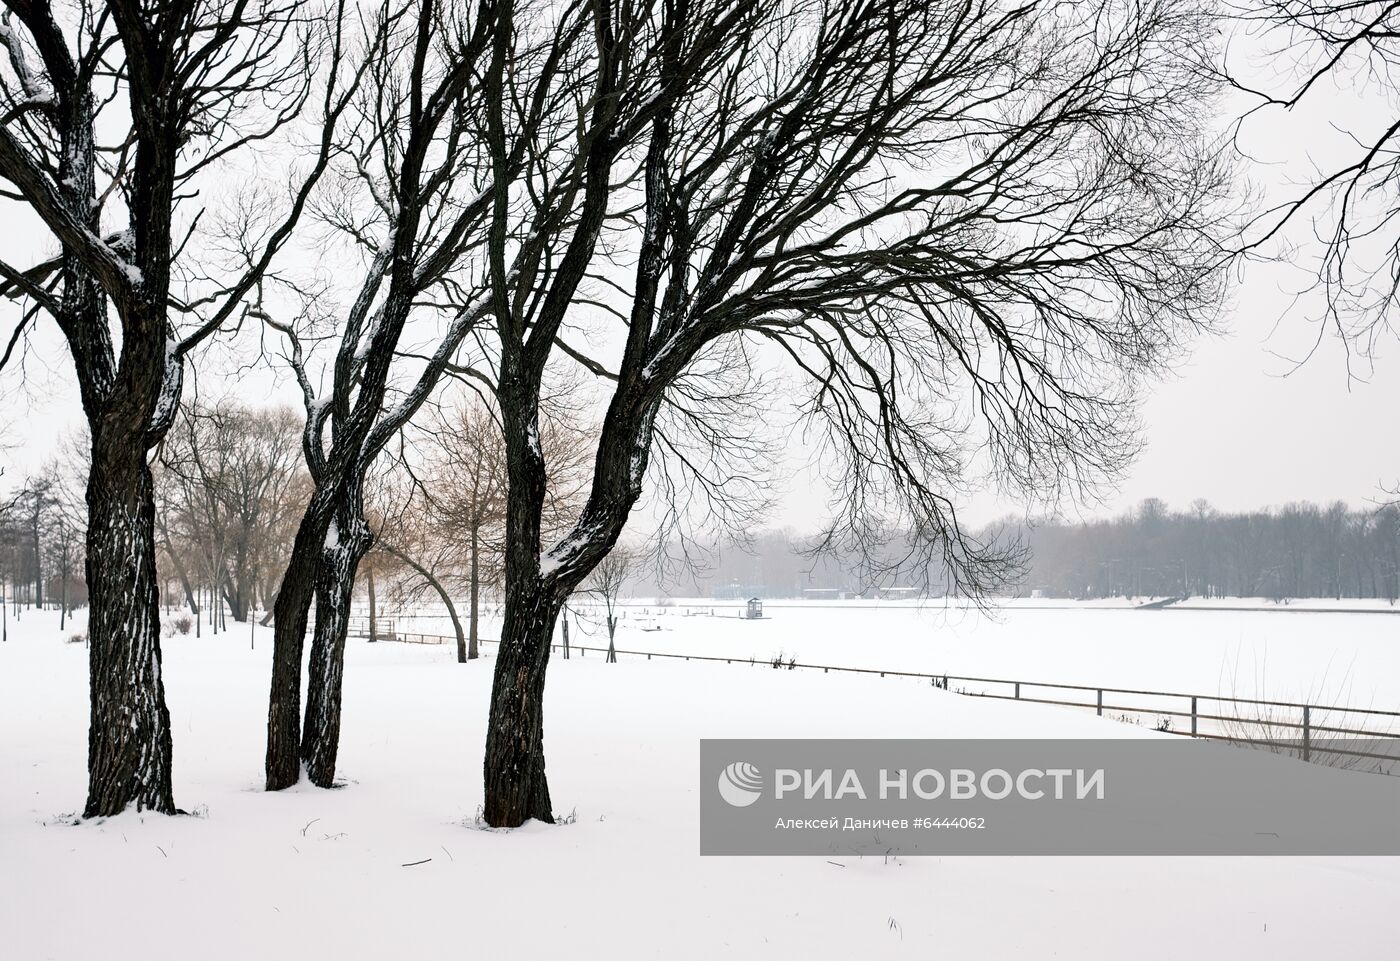 Застройка скверов, спортивных и земельных участков в Санкт-Петербурге